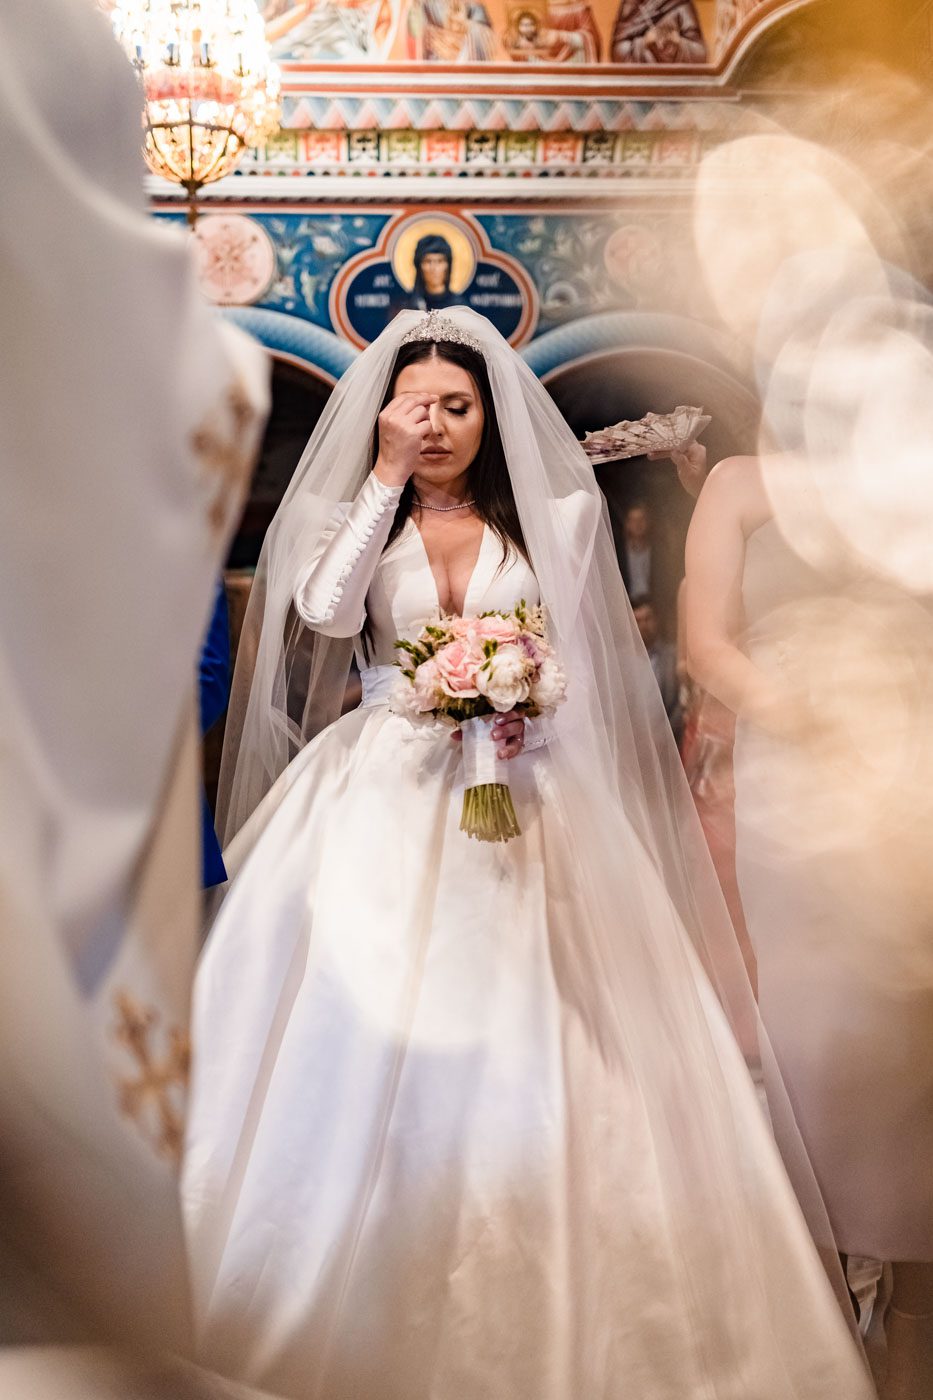 fotograf cameraman profesionist nunta botez eveniment constanta tulcea bucuresti fotografie videografie sedinta foto